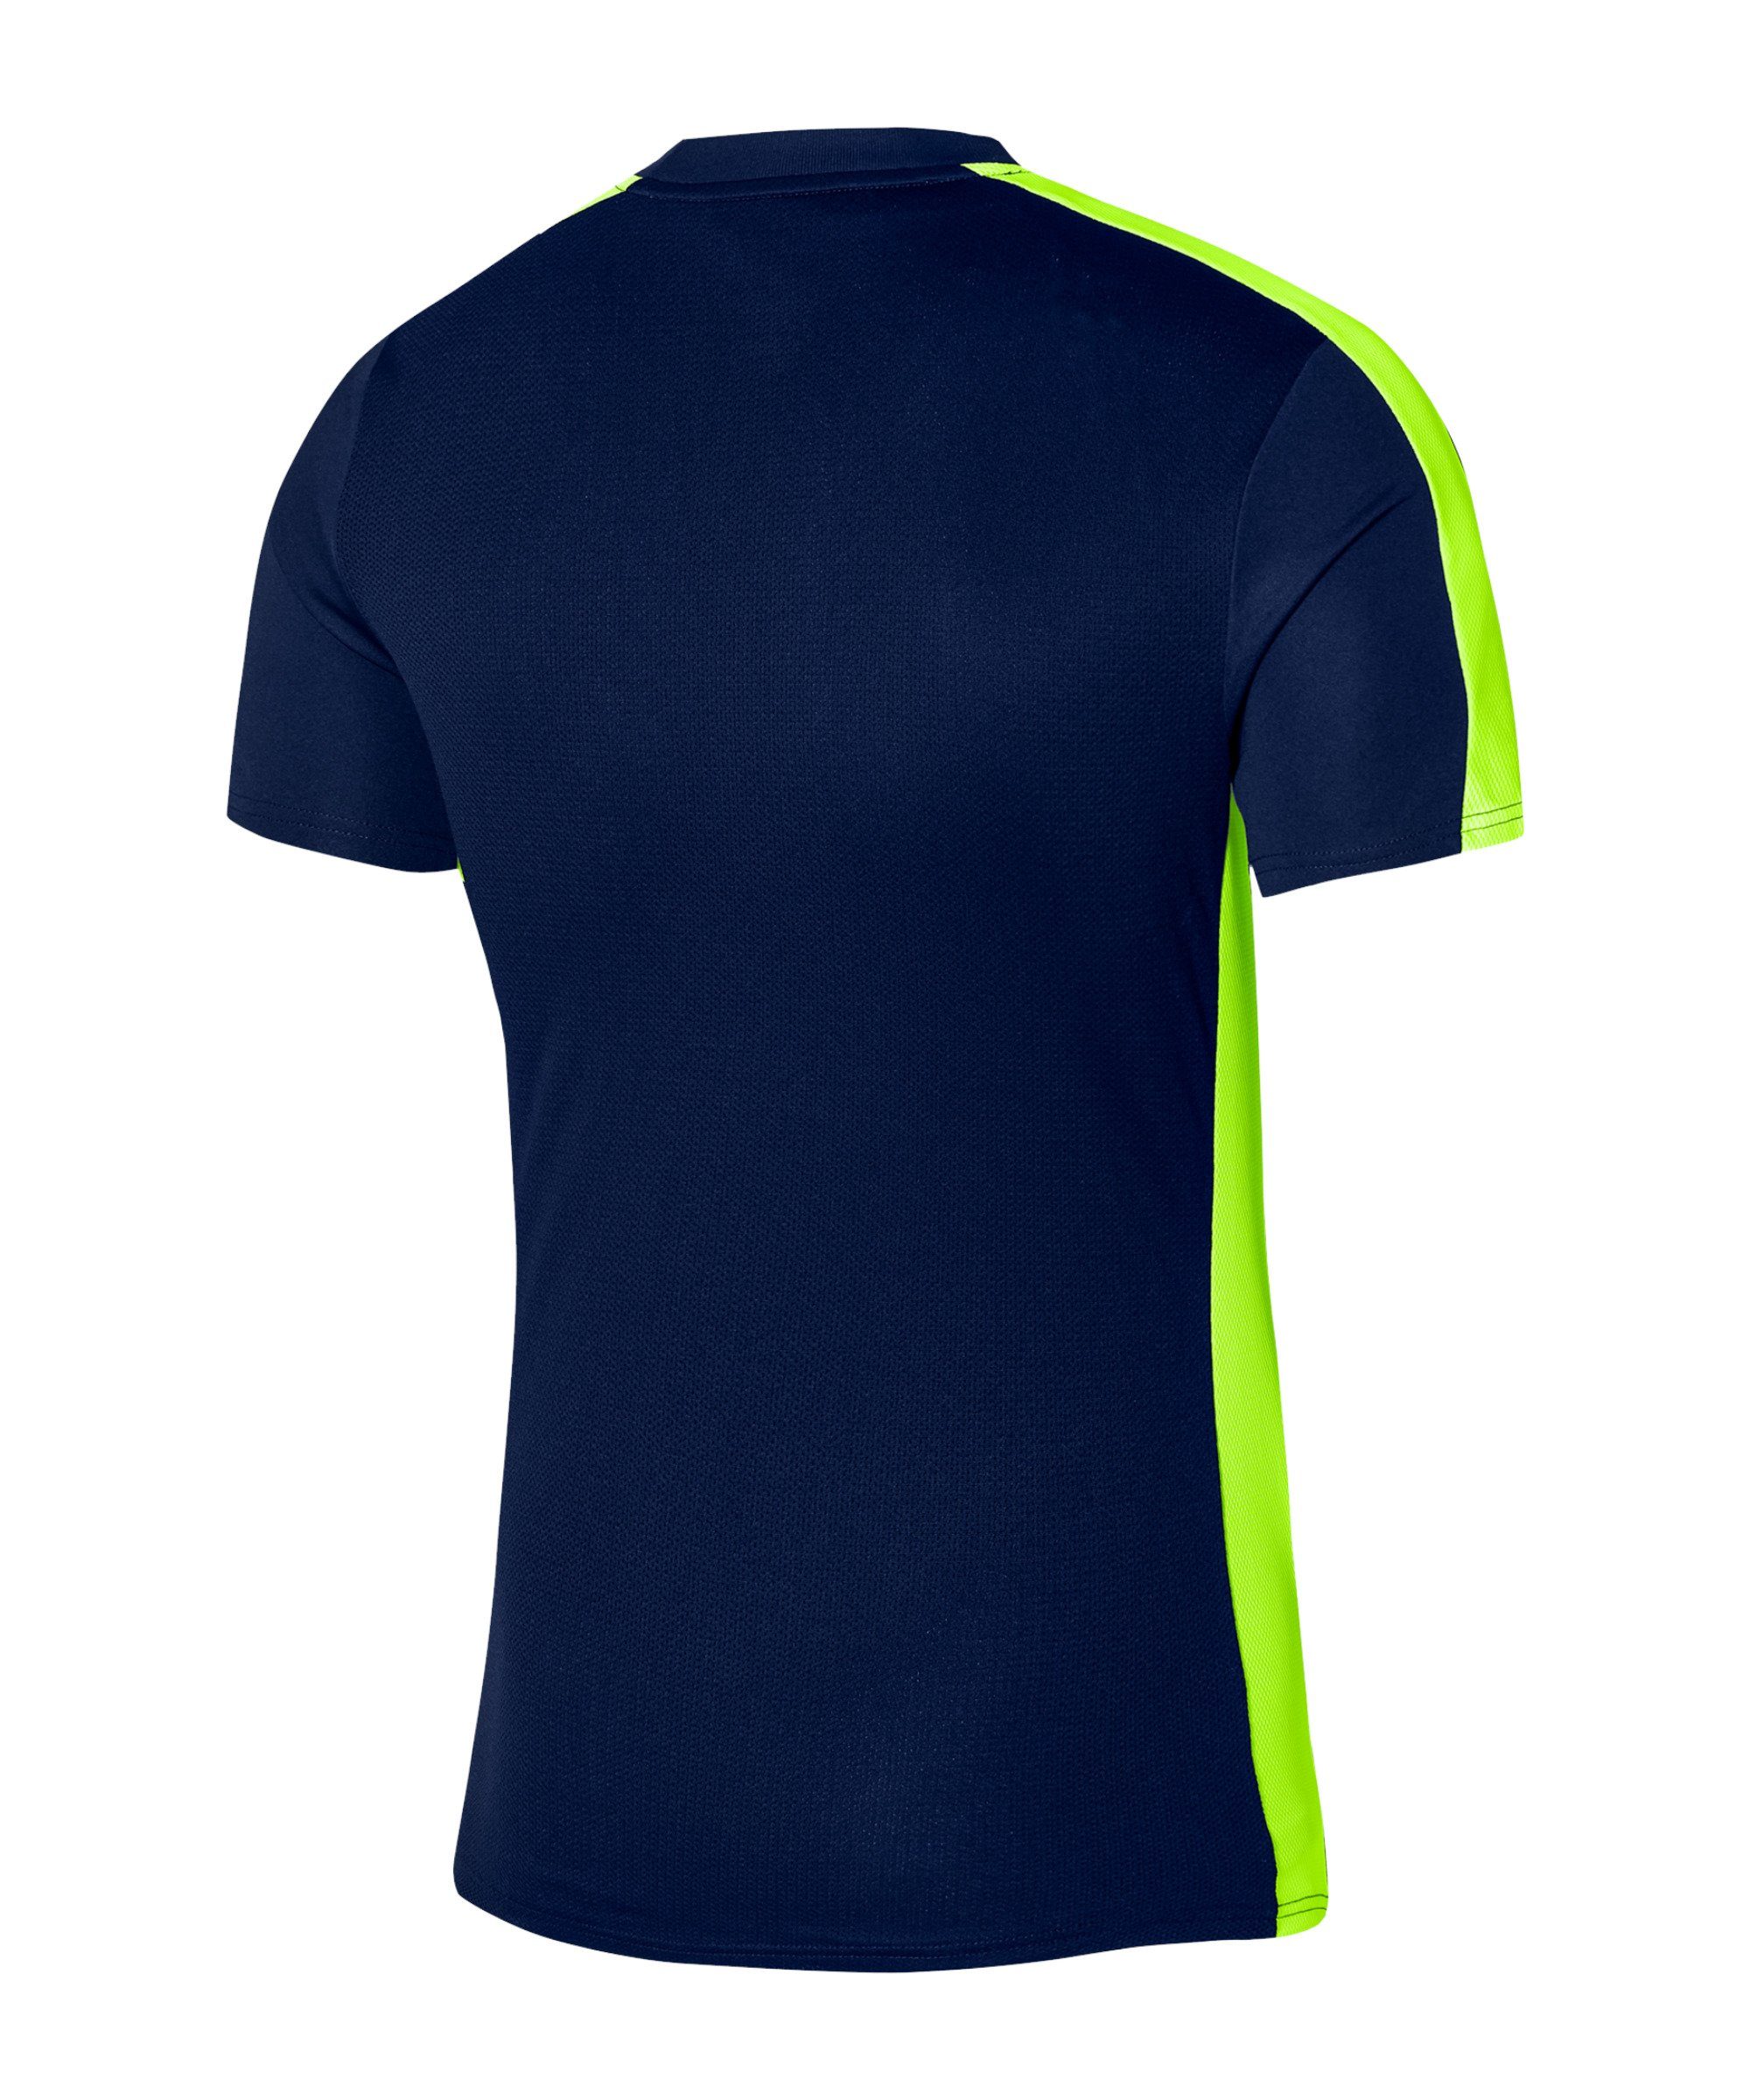 default T-Shirt Nike blaugrauweiss Academy 23 Trainingsshirt Kids